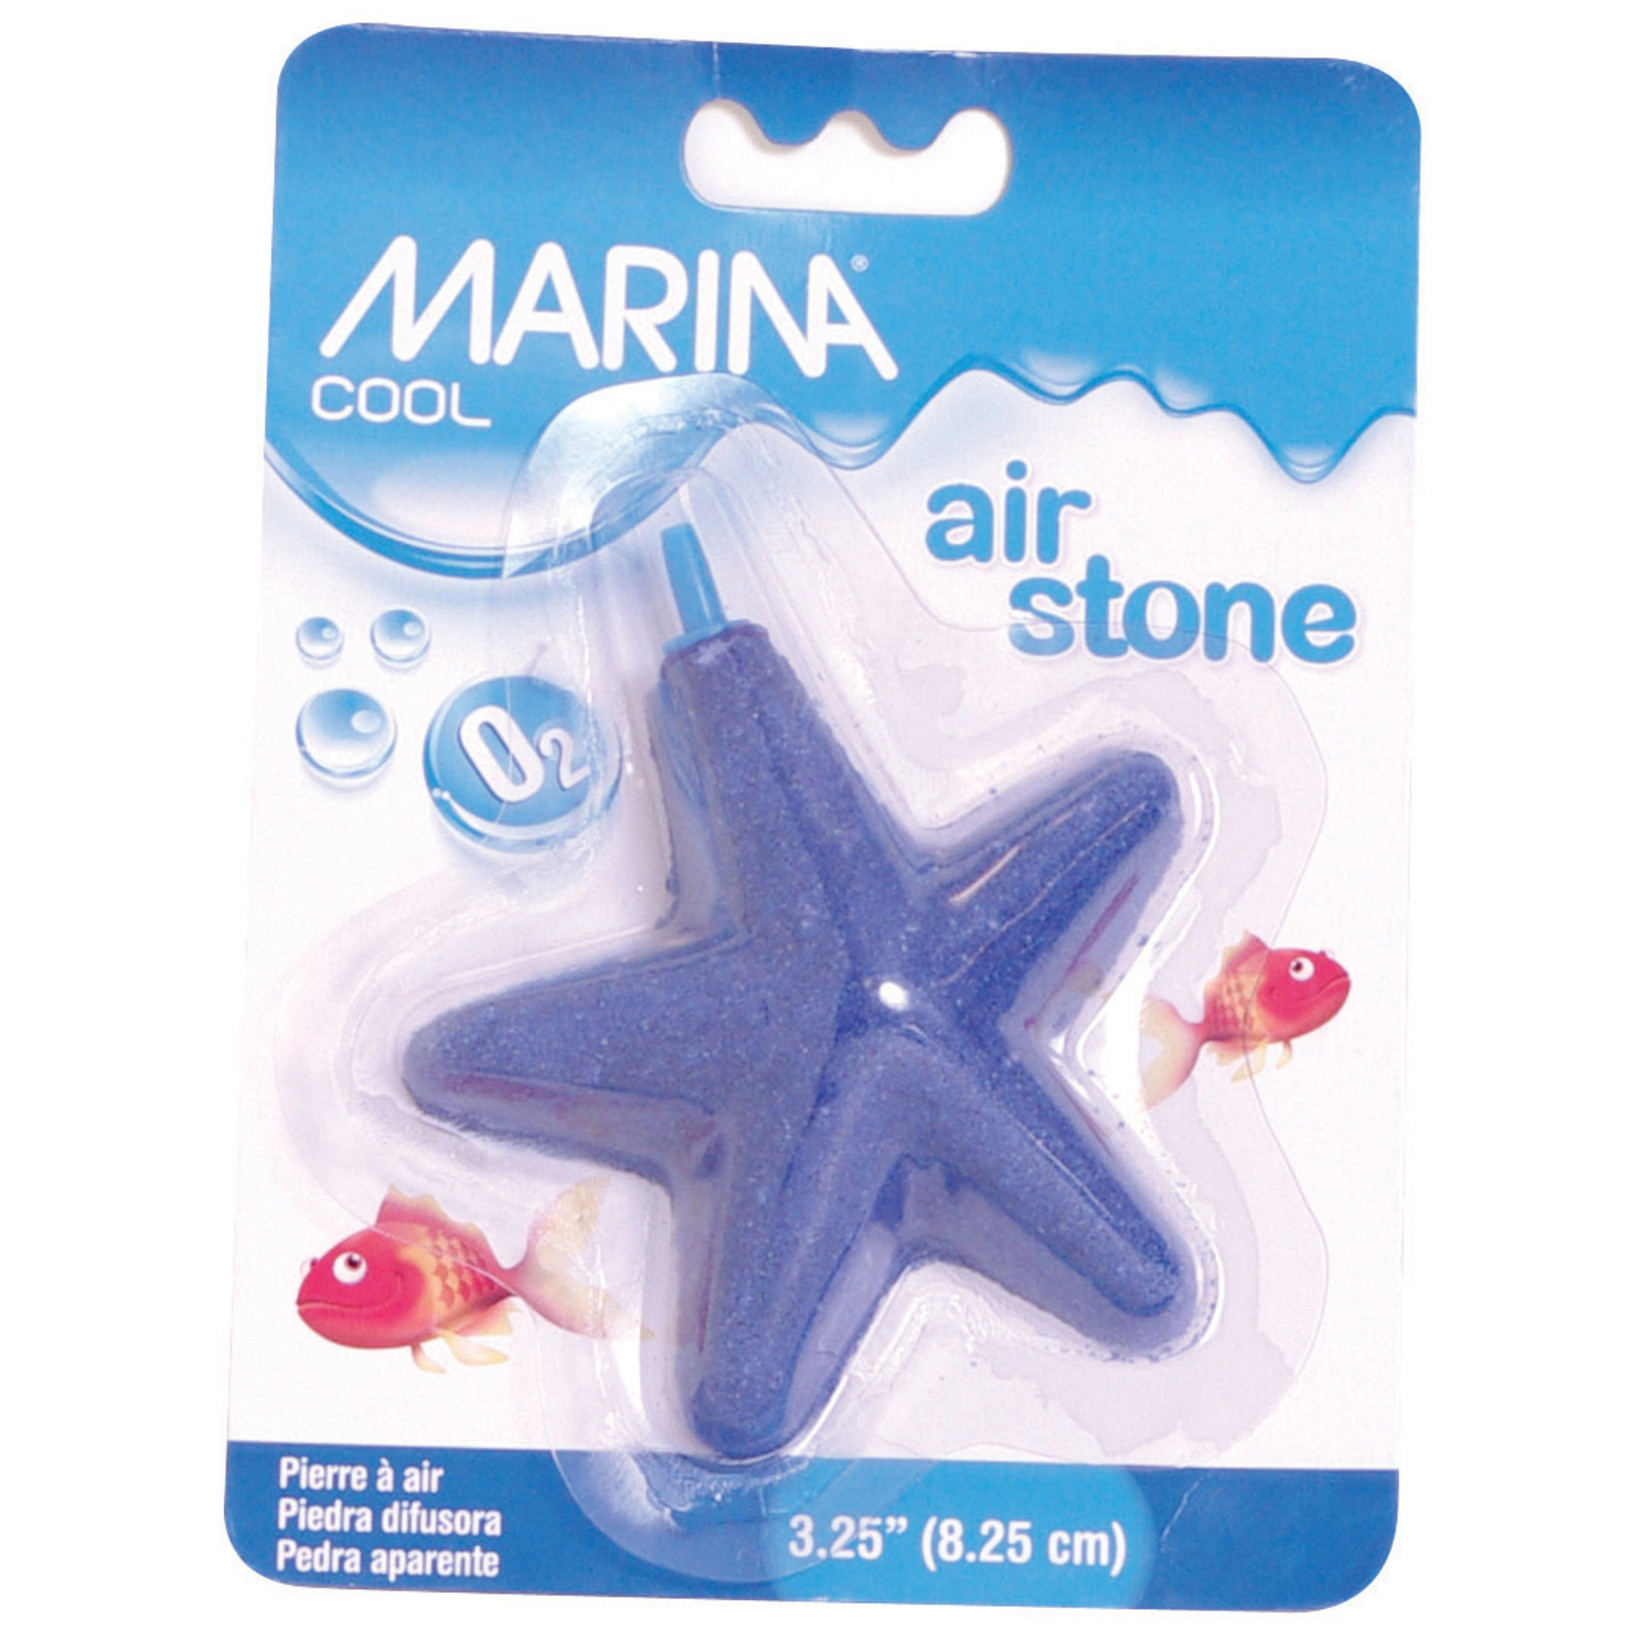 Marina Cool Starfish Airstone, Blue